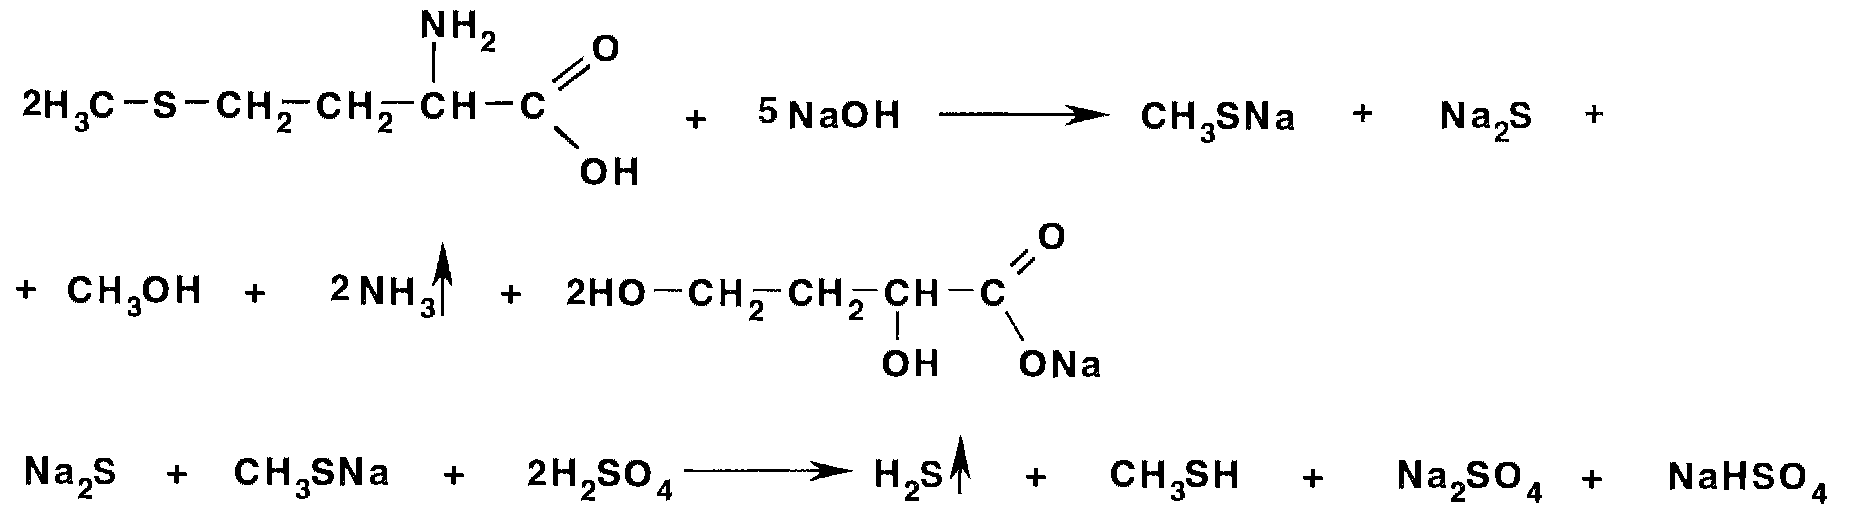 Глицин реагирует с гидроксидом натрия. Метионин и гидроксид натрия реакция. Цистеин с нитропруссидом натрия реакция. Схемы реакций глицина с гидроксидом натрия. Ацетилцистеин натрия нитропруссид аммиак.